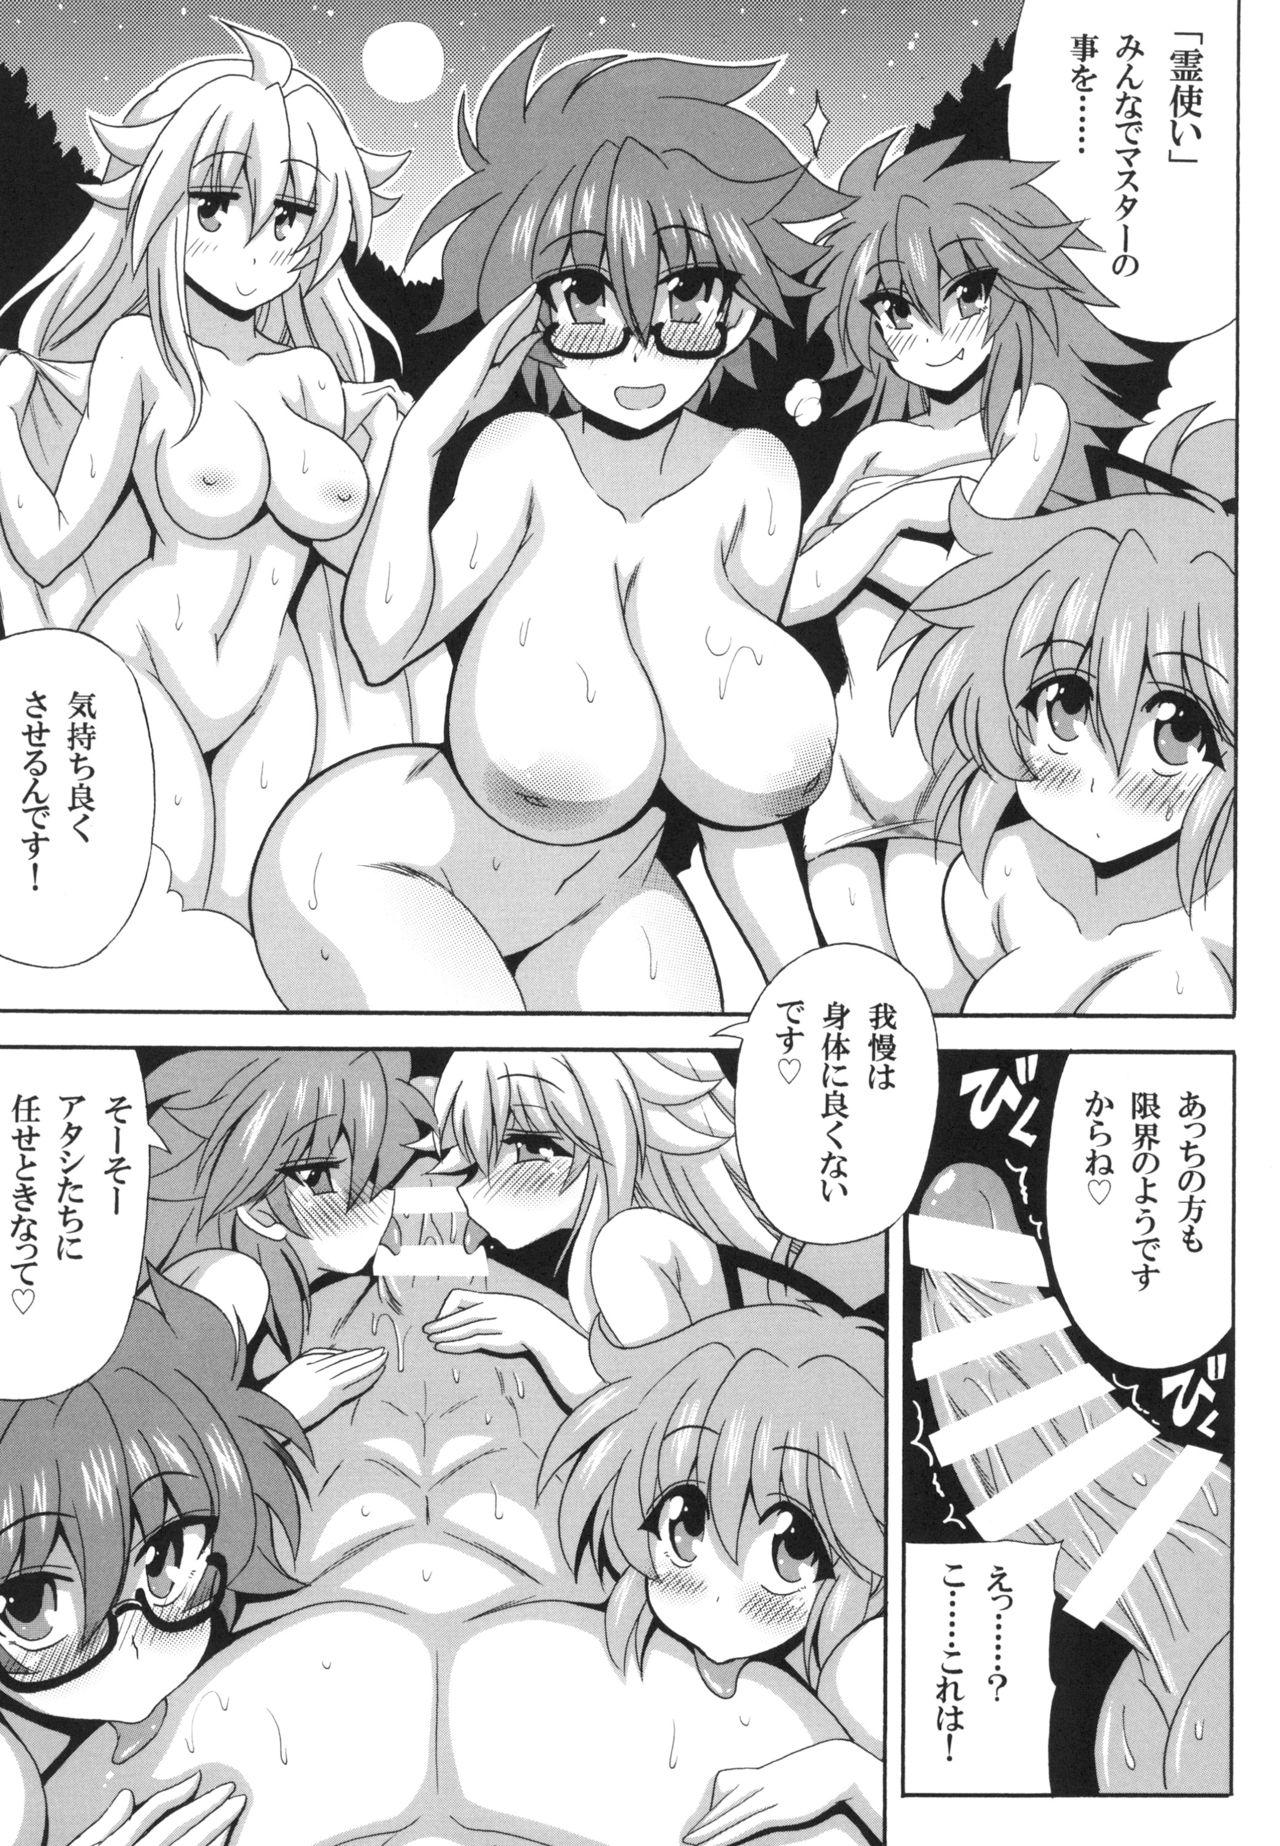 Kinky Reitsukai Onsen e Youkoso - Yu gi oh Amadora - Page 5